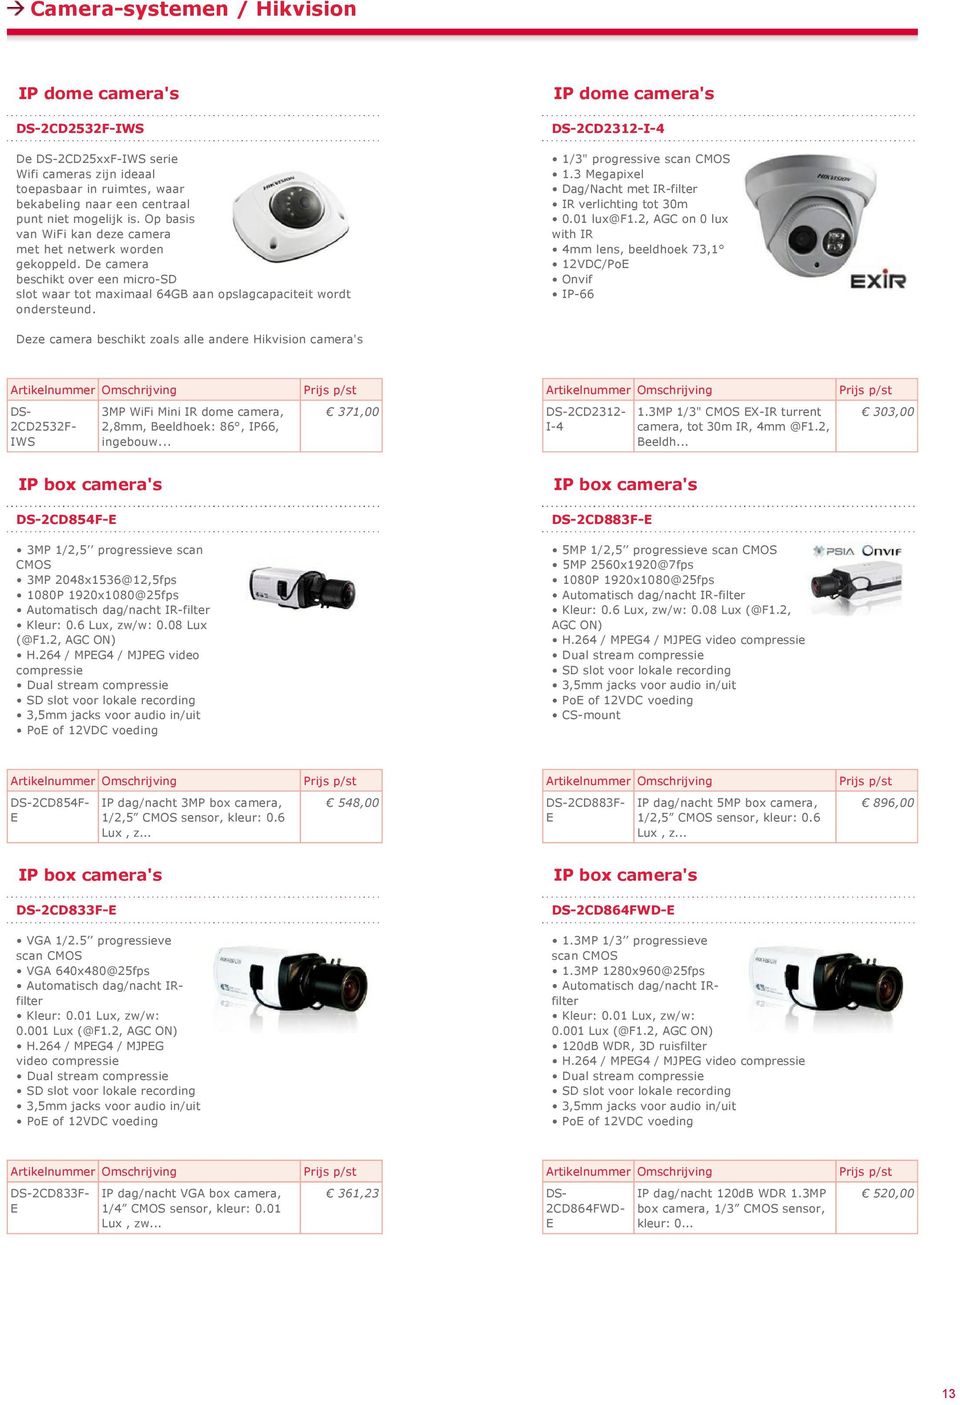 2, GC on 0 lux 4mm lens, beeldhoek 73,1 Deze camera beschikt zoals alle andere Hikvision camera's 2CD2532F IWS 3MP WiFi Mini IR dome camera, 2,8mm, Beeldhoek: 86, IP66, ingebouw... 371,00 2CD2312 I 4 1.